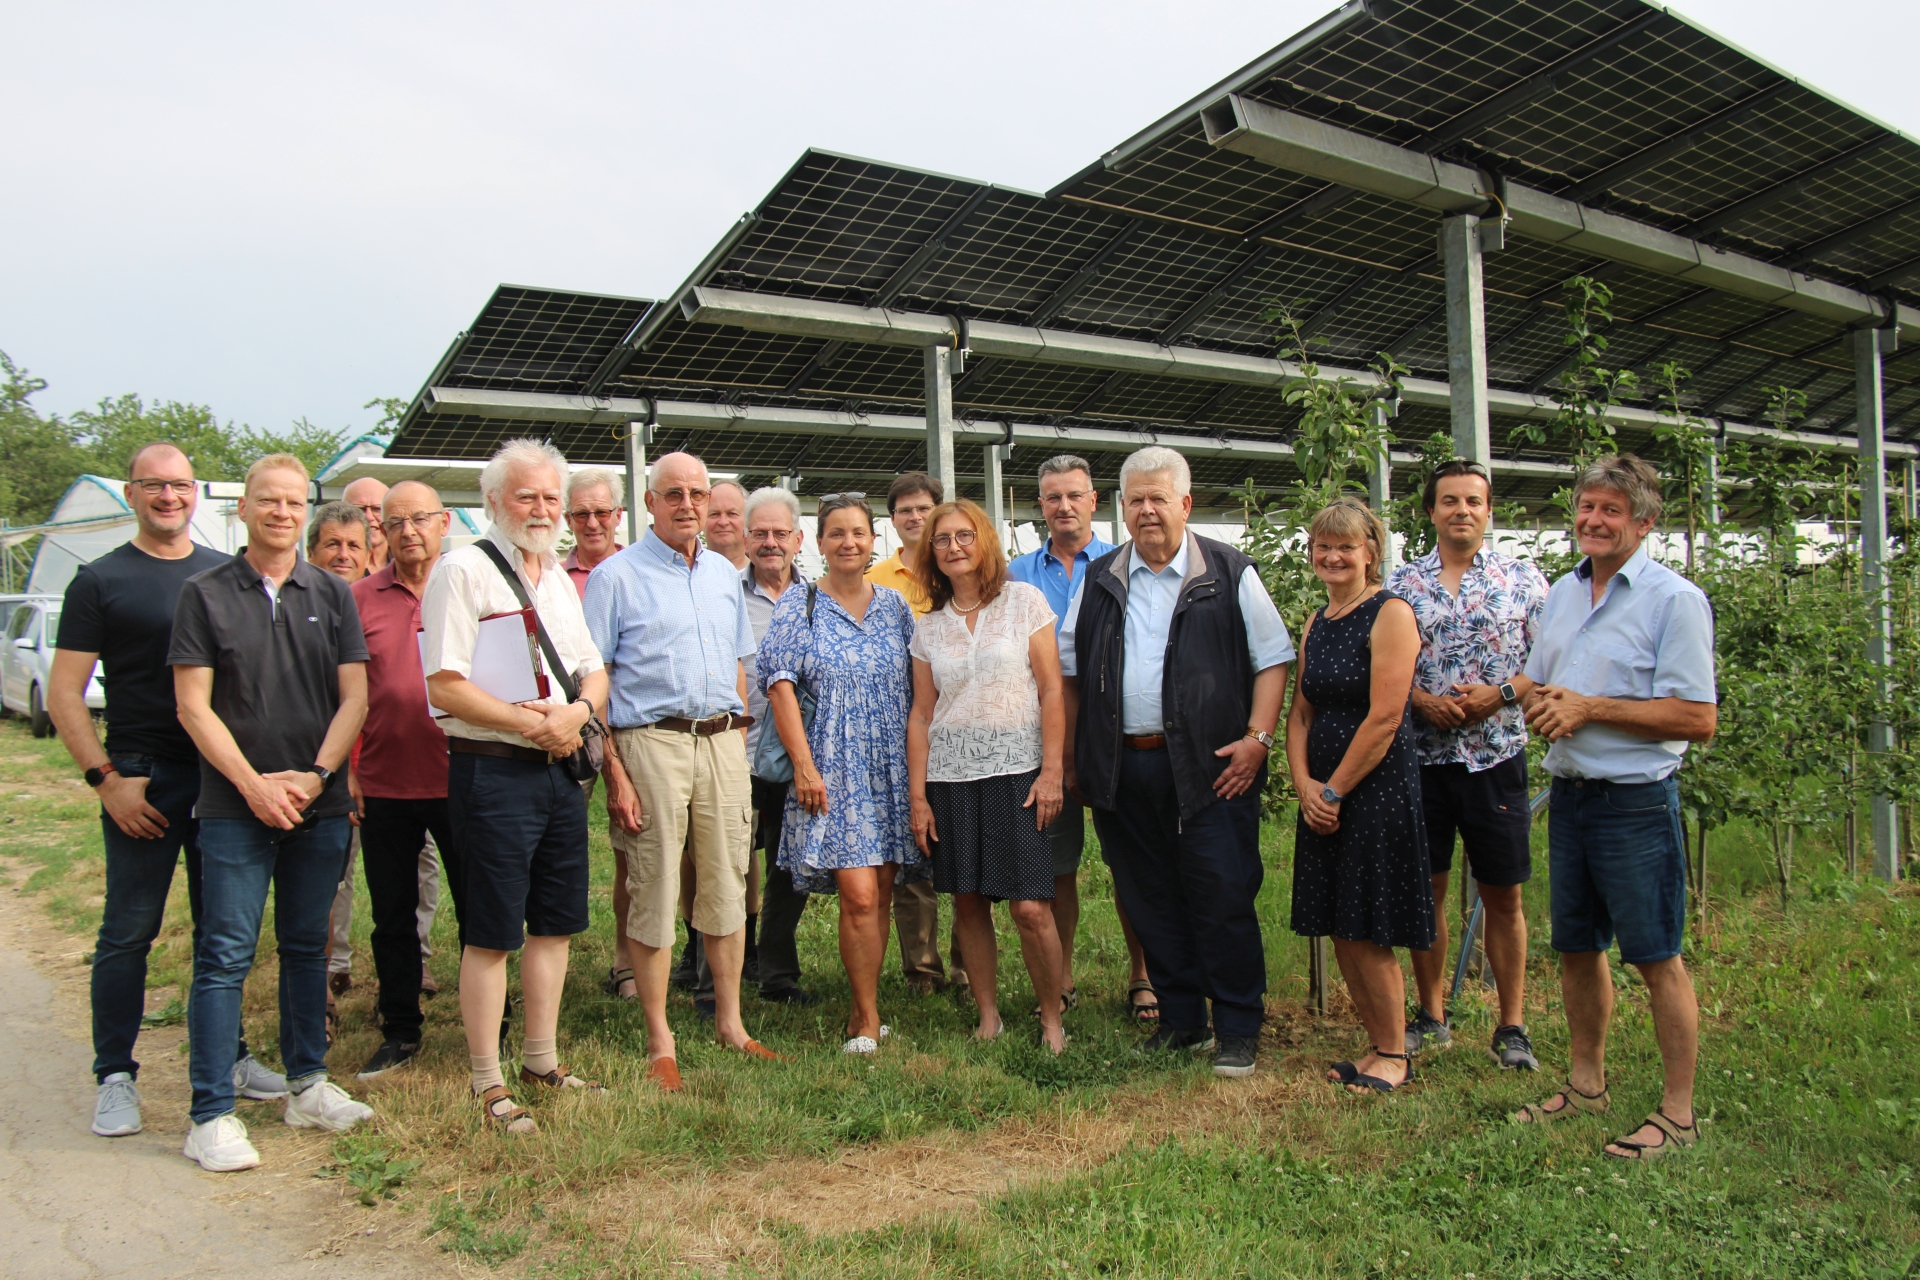 Foto: Roman Vallendor CDU-Fraktion - und der Vorstand der CDU Oberkirch informierten sich ber PV-Anlagen von Dr.Vollmer/Intech in Oberkirch-Nubach, die in das Forschungsprojekt Modellregion des Landes aufgenommen sind.